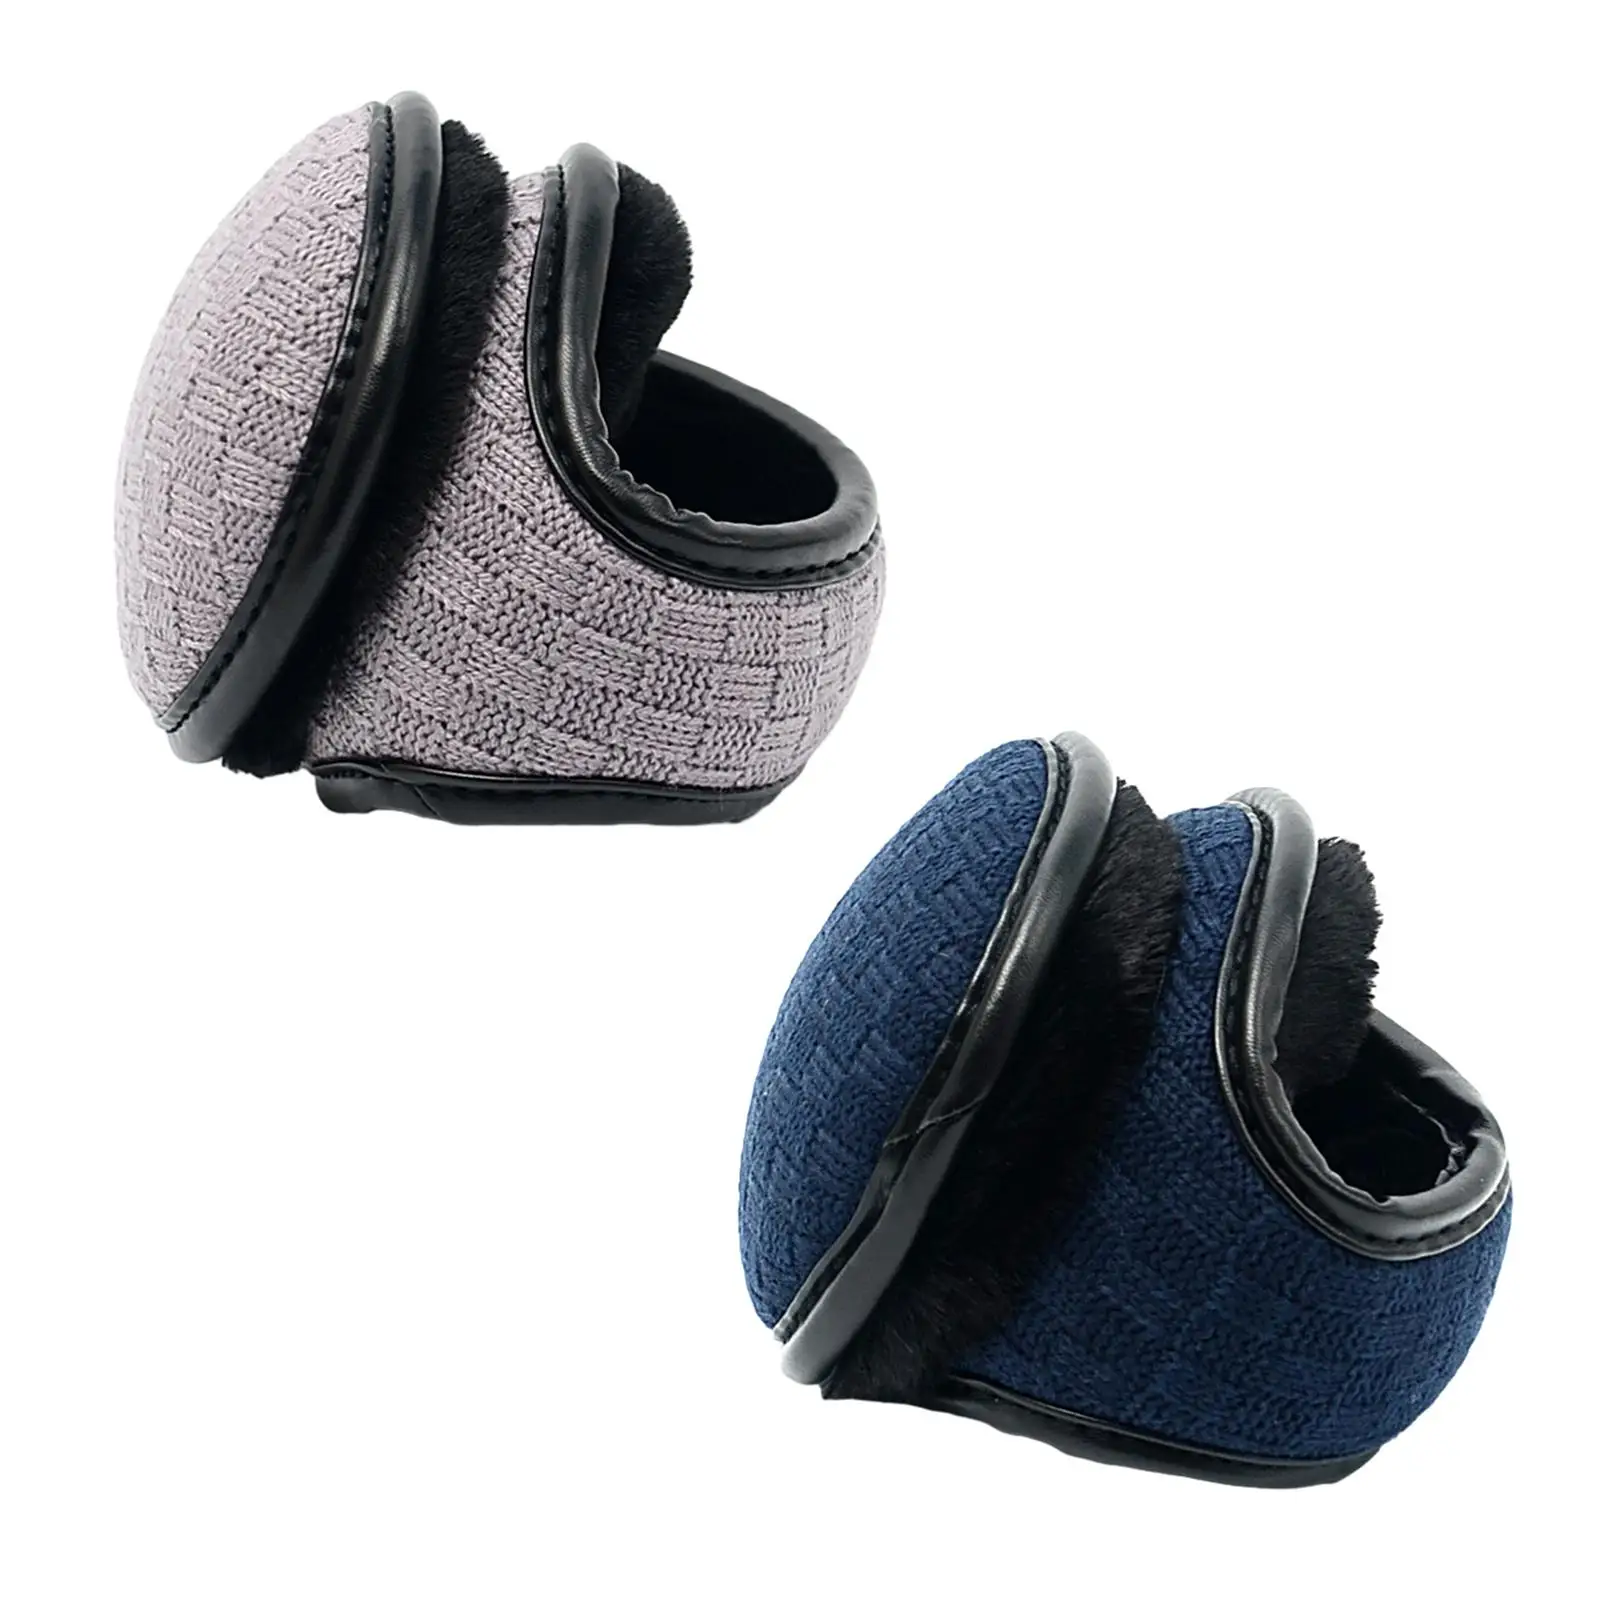 Winter Ear Warmers Fleece Soft Folded Earmuffs for Men Women Warm Ear Muffs